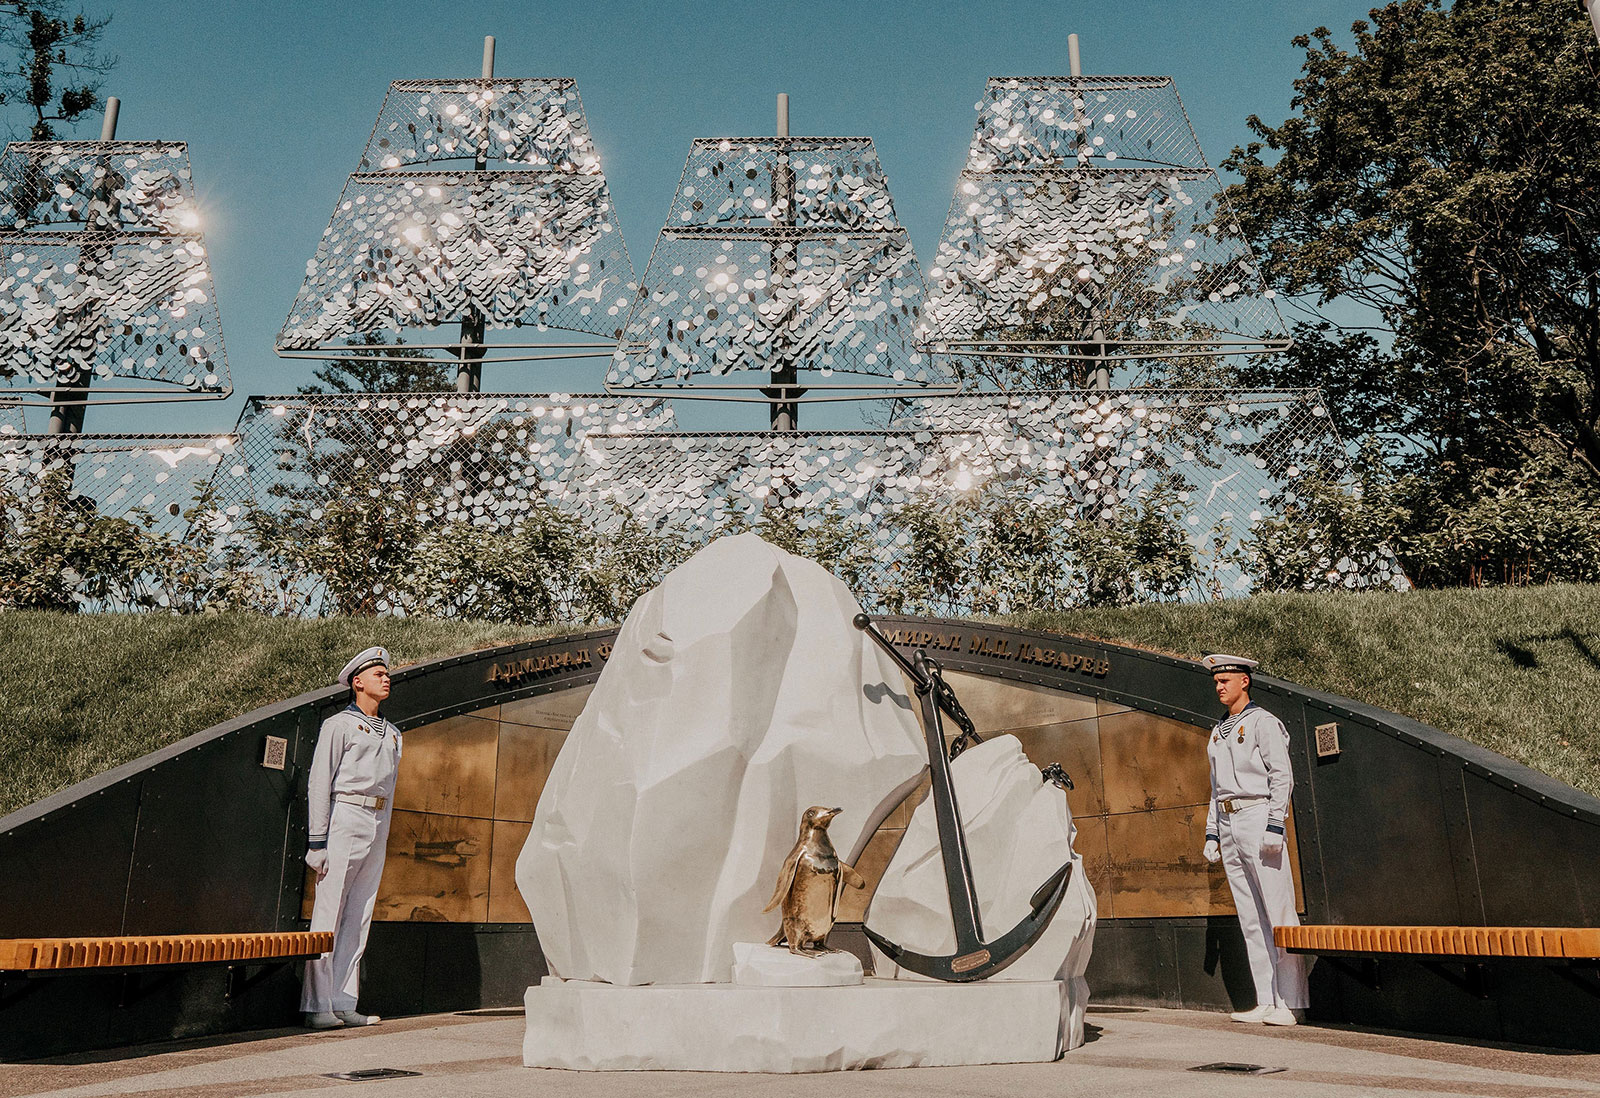 Участок "Аллеи героев" парка Остров фортов, посвященный адмиралу Лазареву М.П.